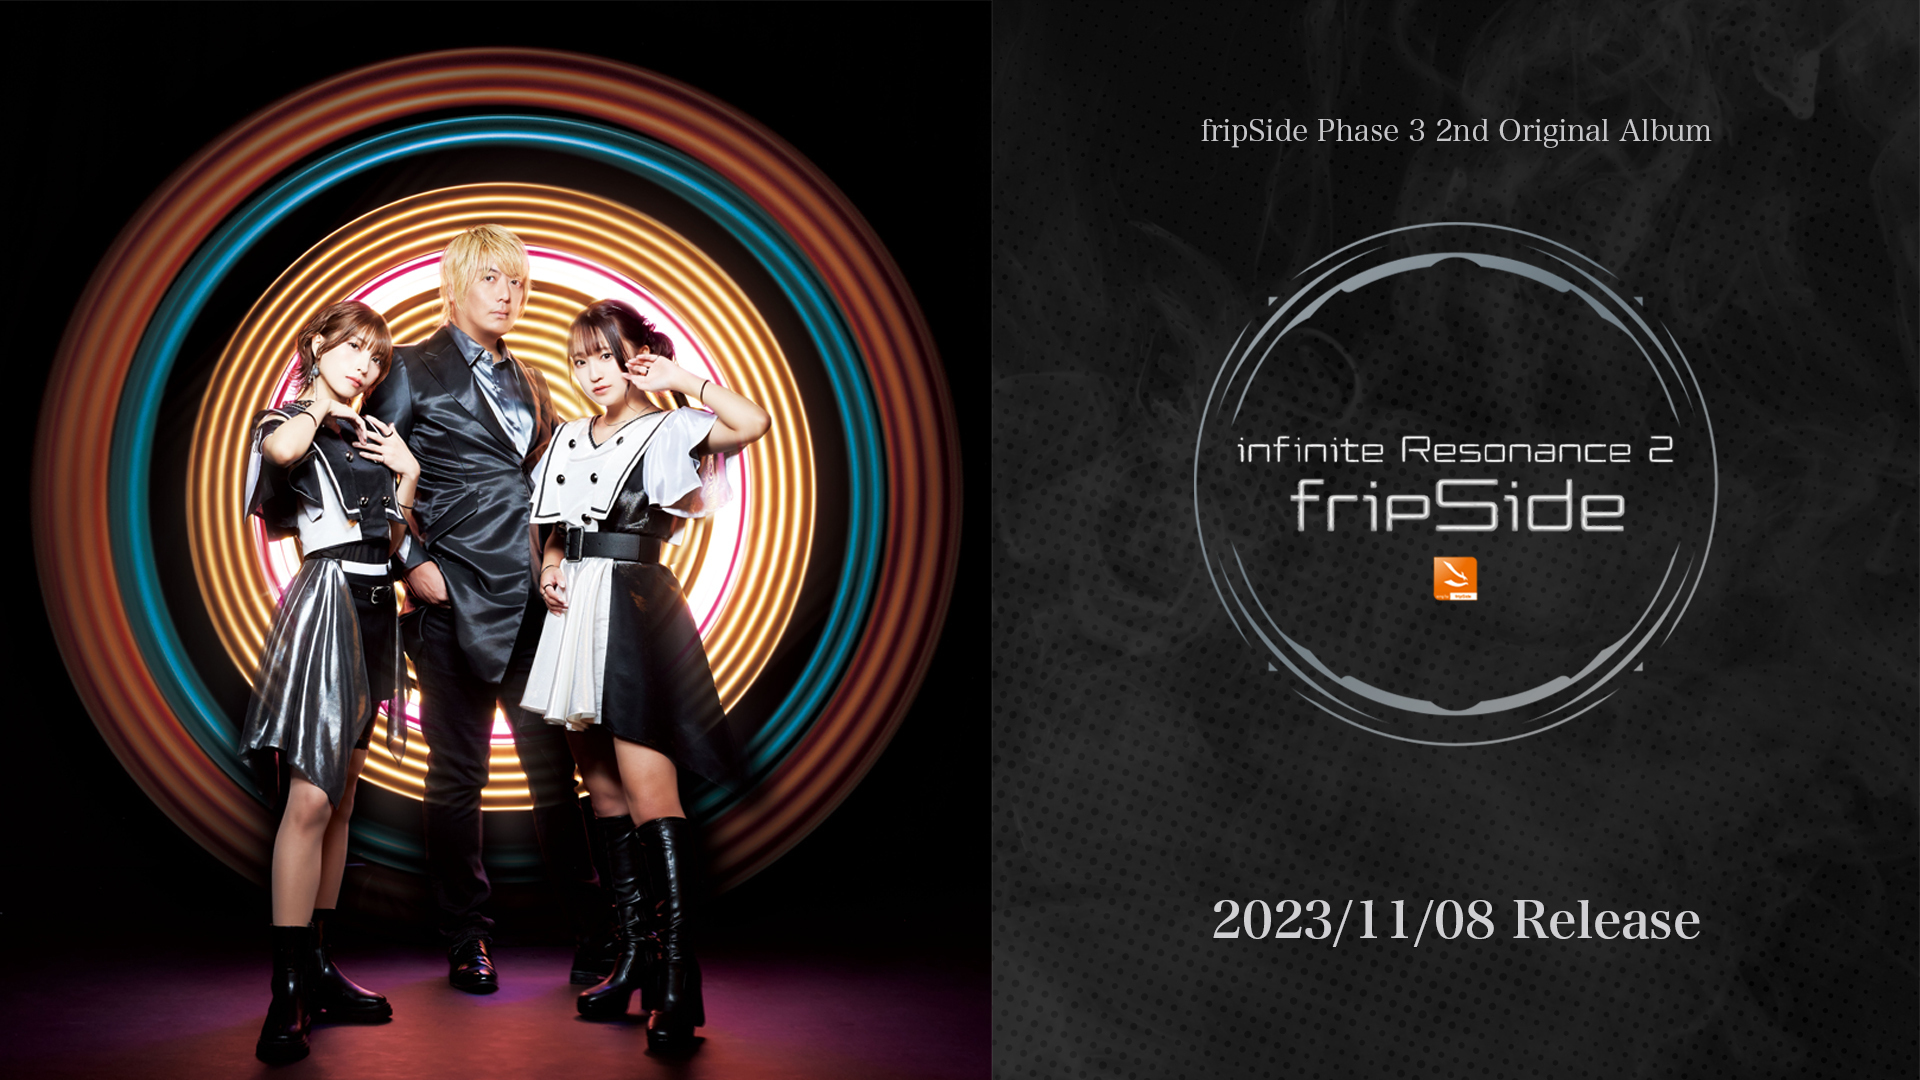 11月8日発売】Phase3 2nd Original Album「infinite Resonance 2 